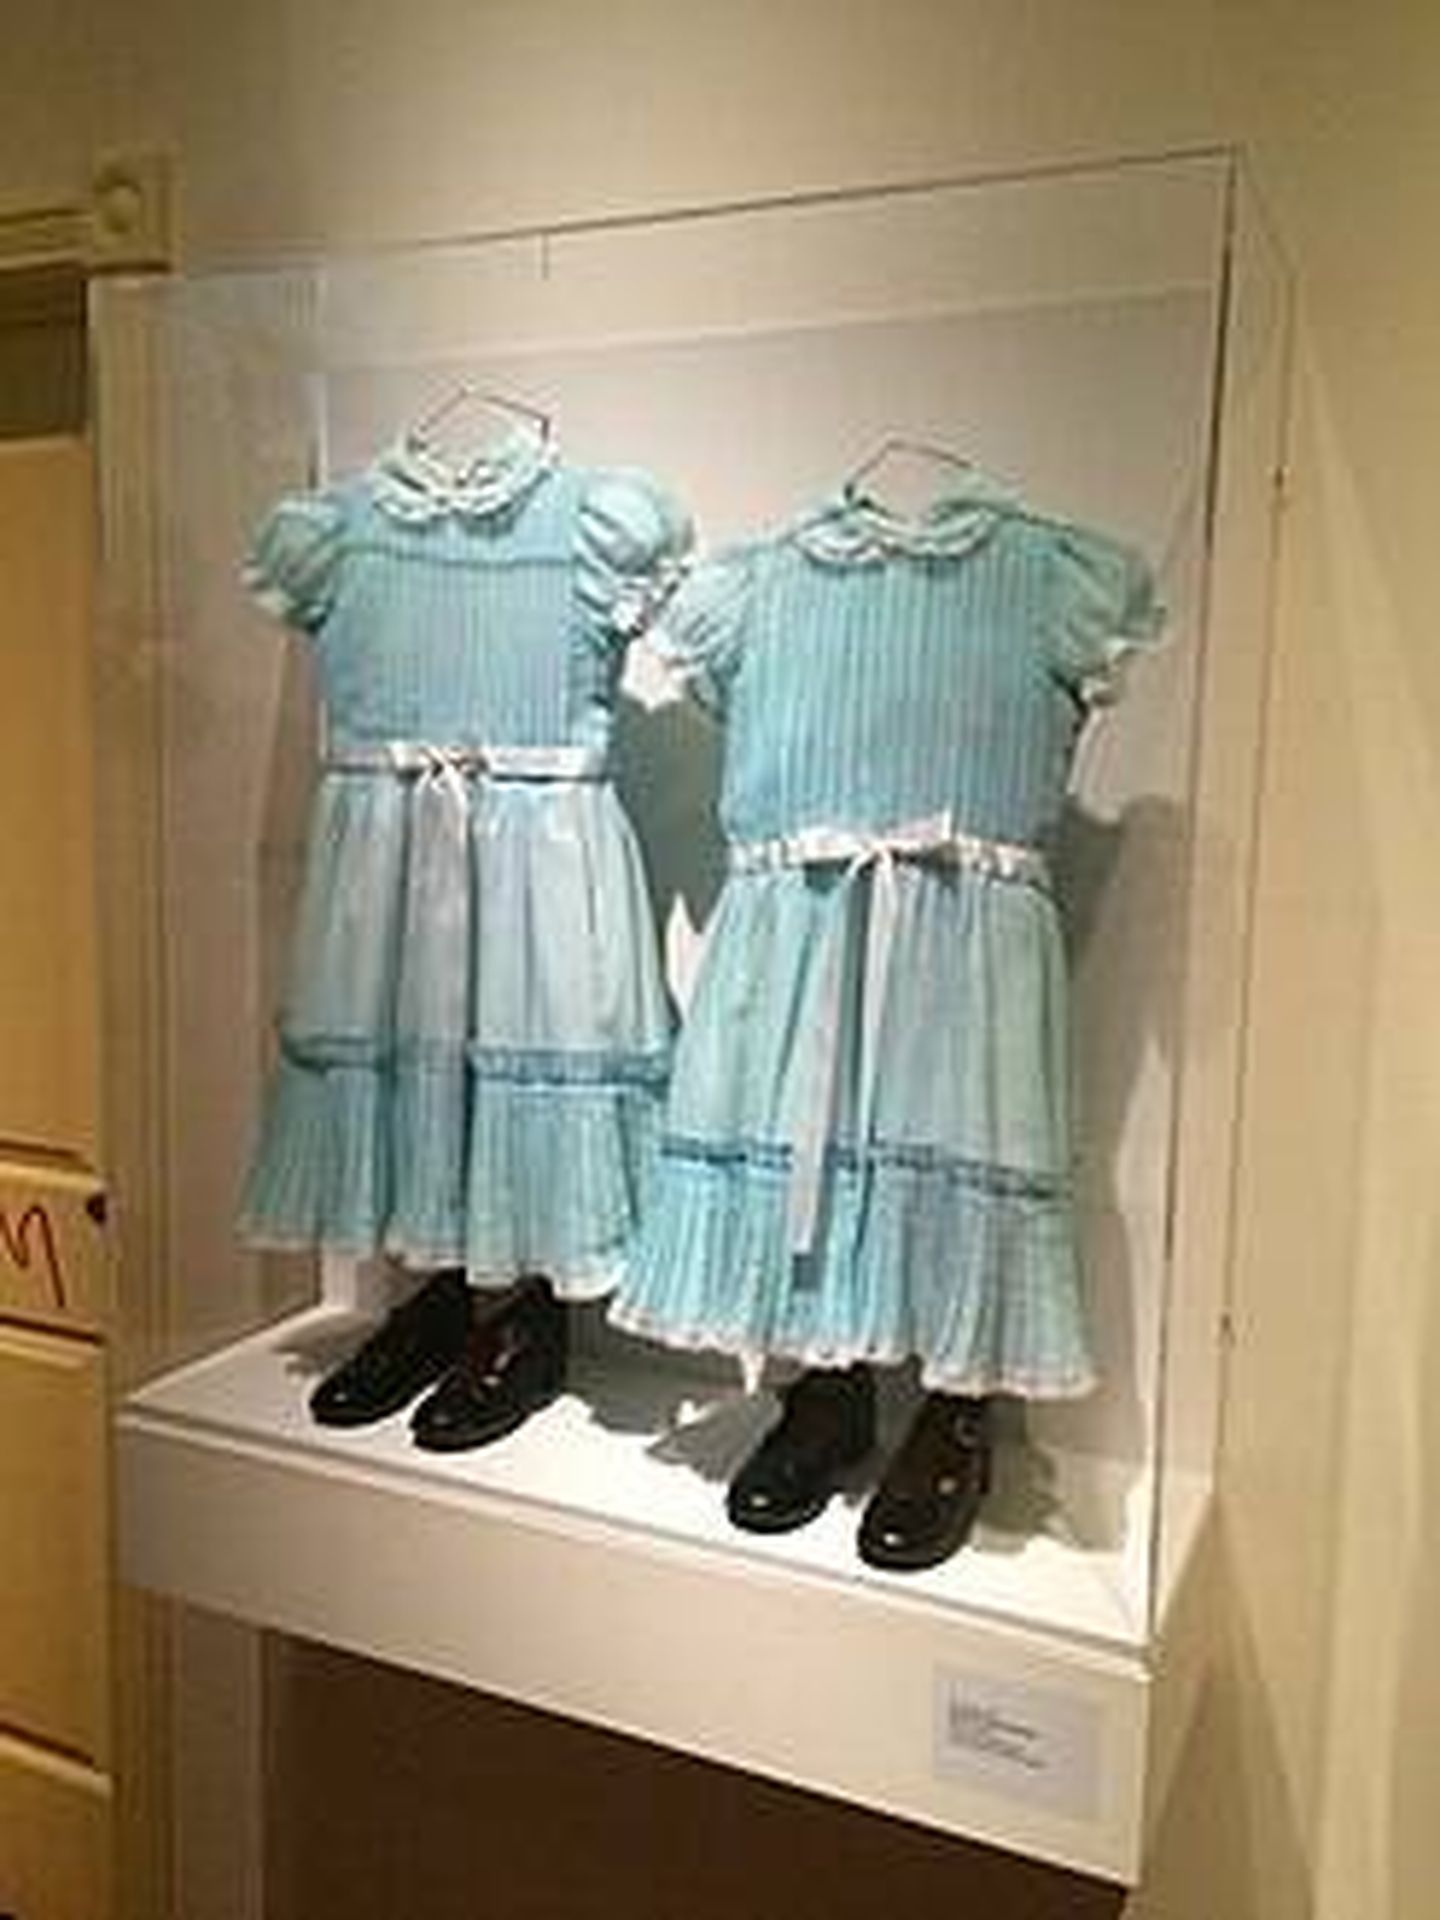 El resplandor: vestido de las gemelas asesinadas - Wikipedia